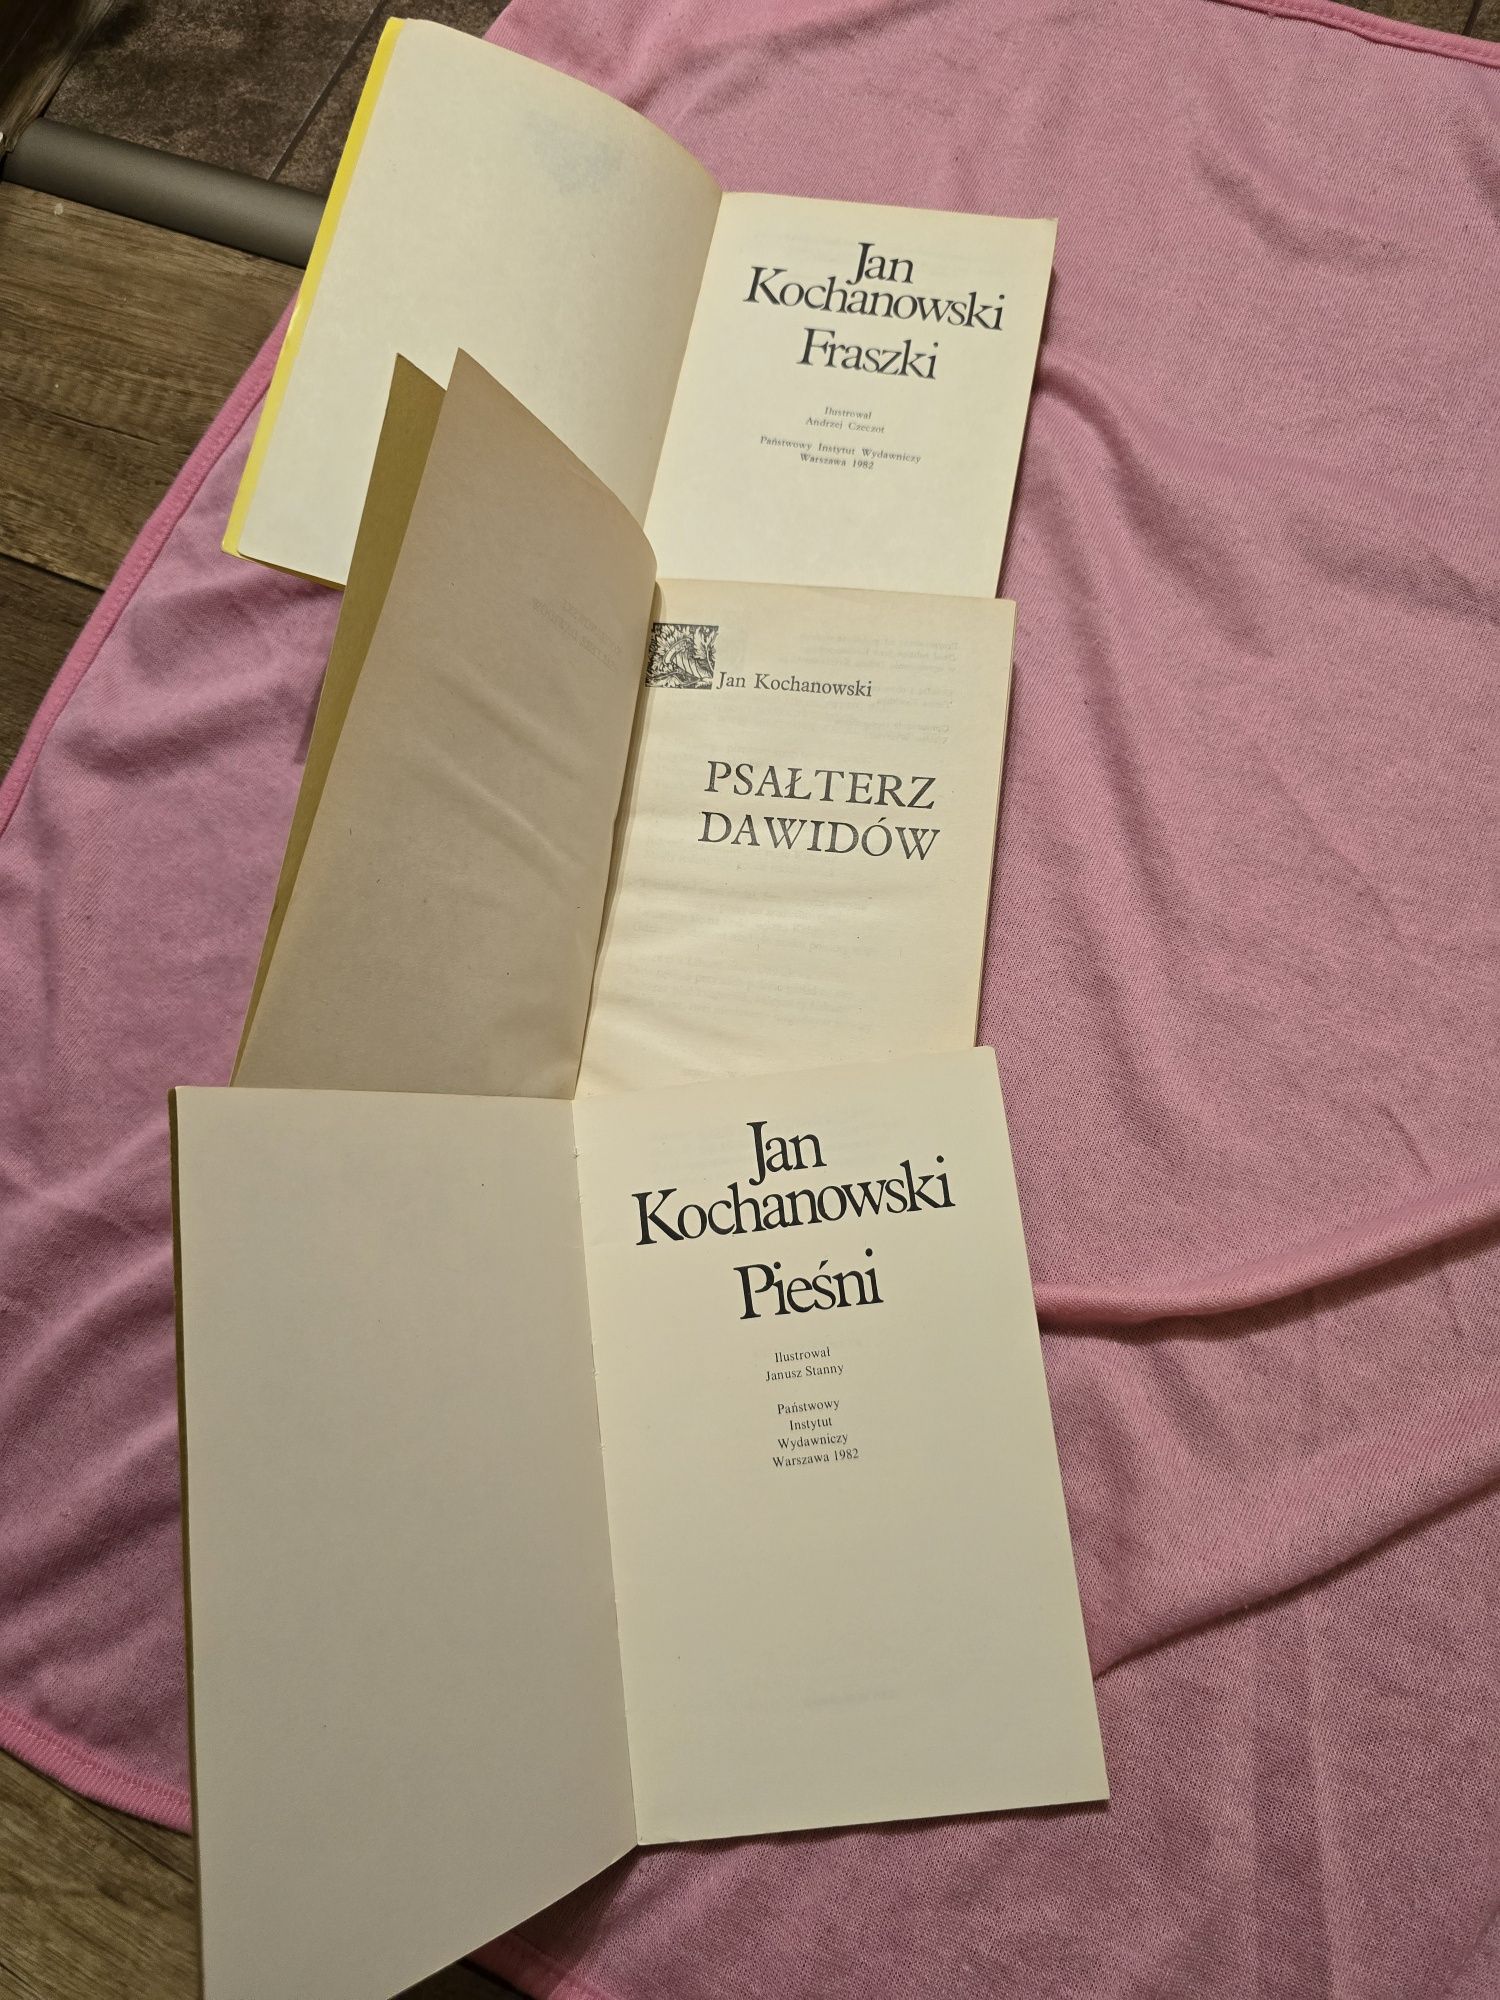 Kochanowski Fraszki,Pieśni,Psałterz